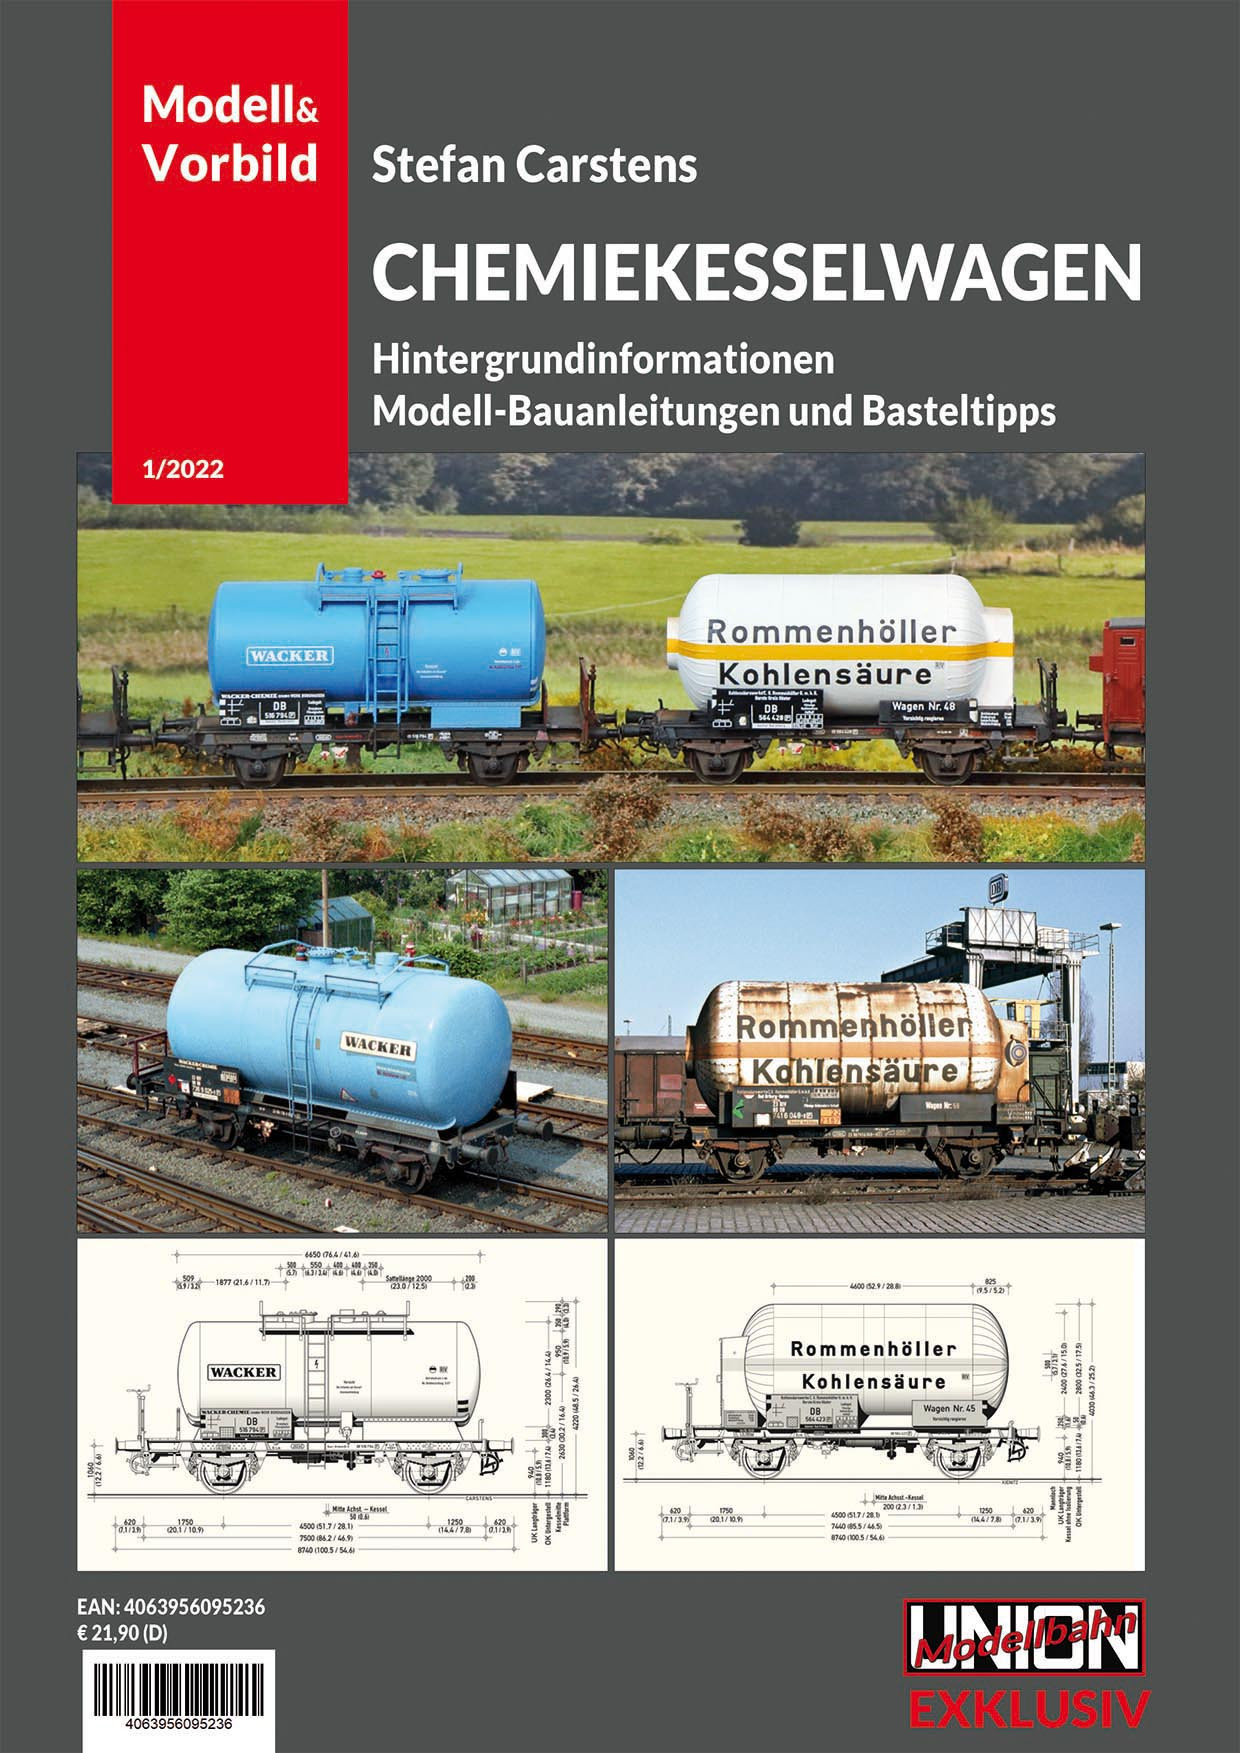 Beschriftungsatz für Chemiekesselwagen aus Carstens Modell&Vorbild 1/2022